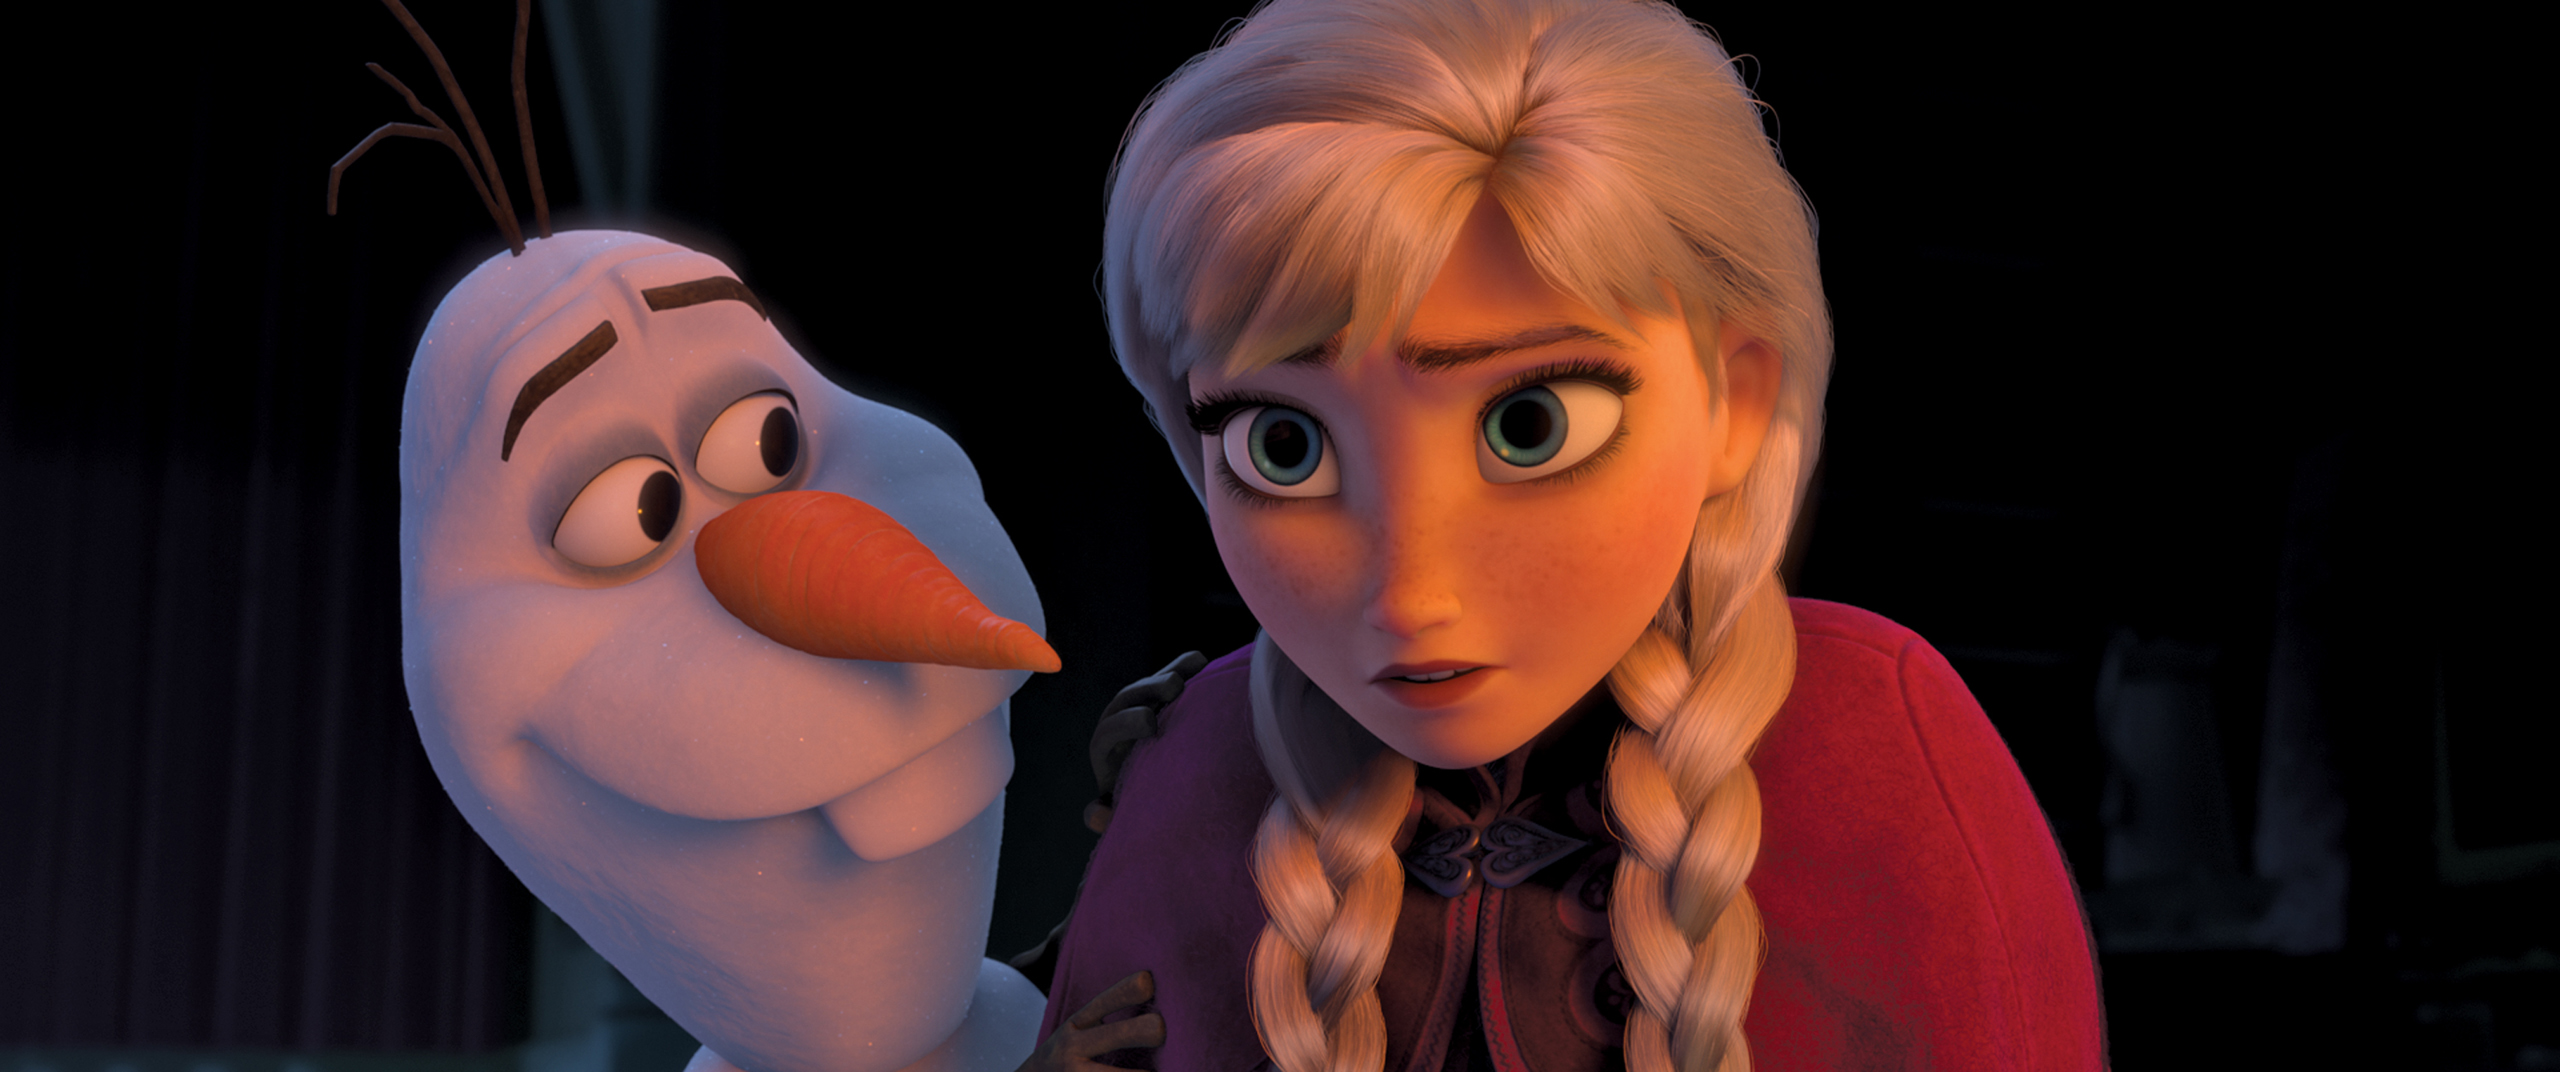 Olaf and Anna (Disney)